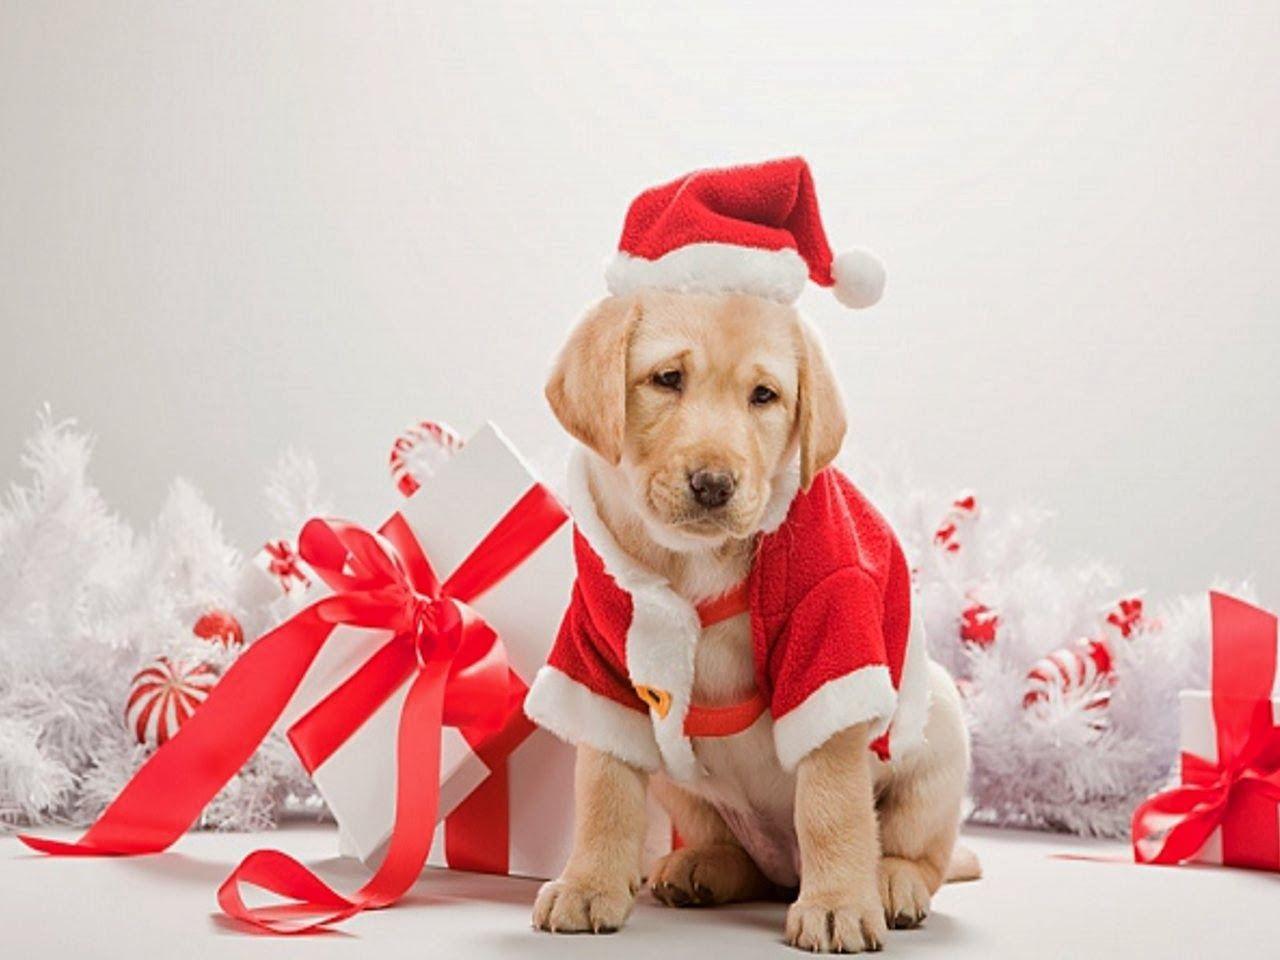 Cute Christmas Dog Wallpaper 2014. Dog christmas gifts